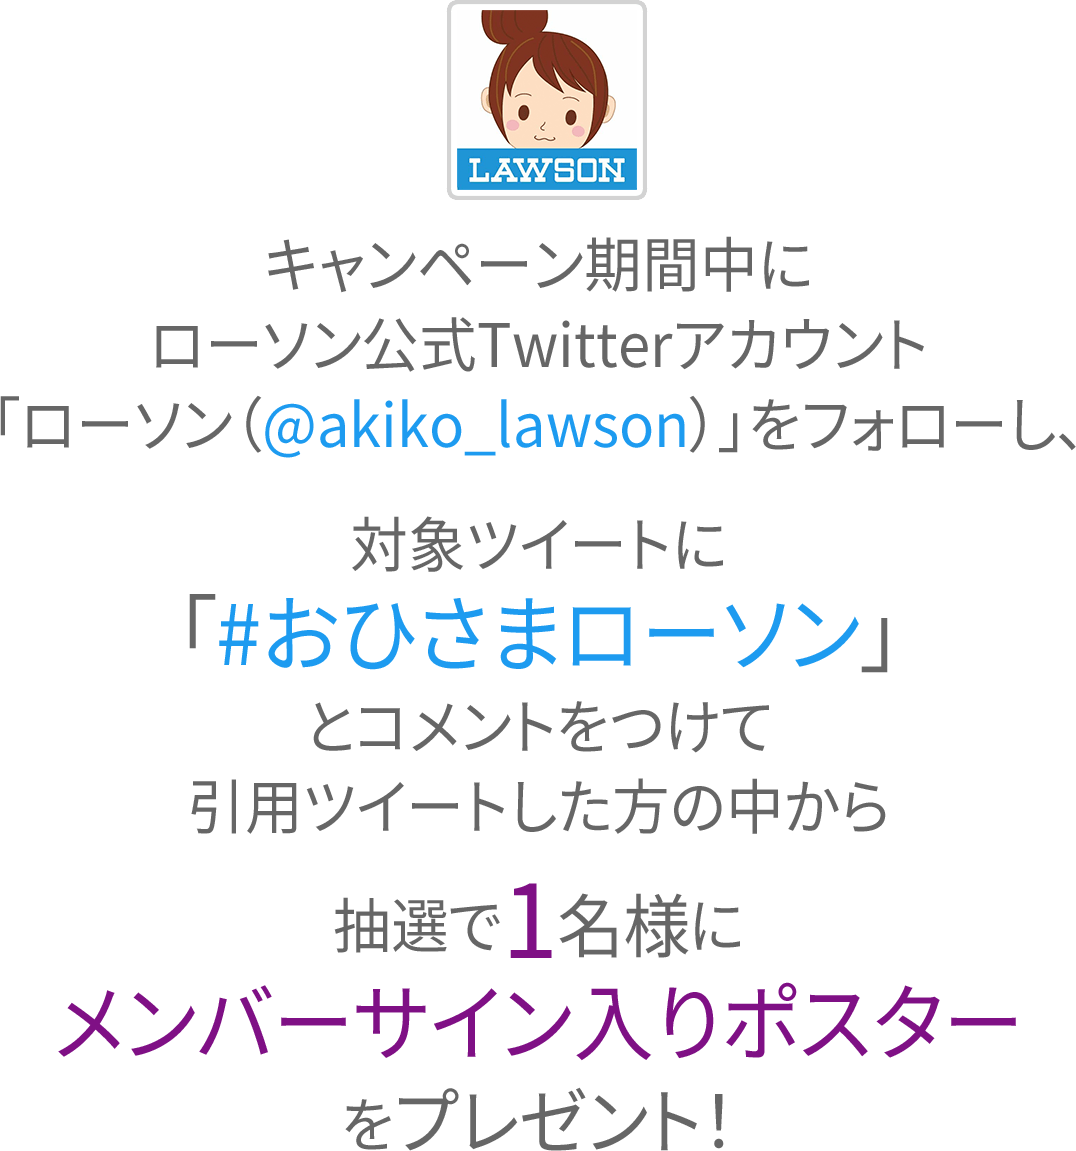 キャンペーン期間中にローソン公式Twitterアカウント「ローソン（@akiko_lawson）」をフォローし、対象ツイートに「#おひさまローソン」とコメントをつけて引用ツイートした方の中から抽選で1名様にメンバーサイン入りポスターをプレゼント！